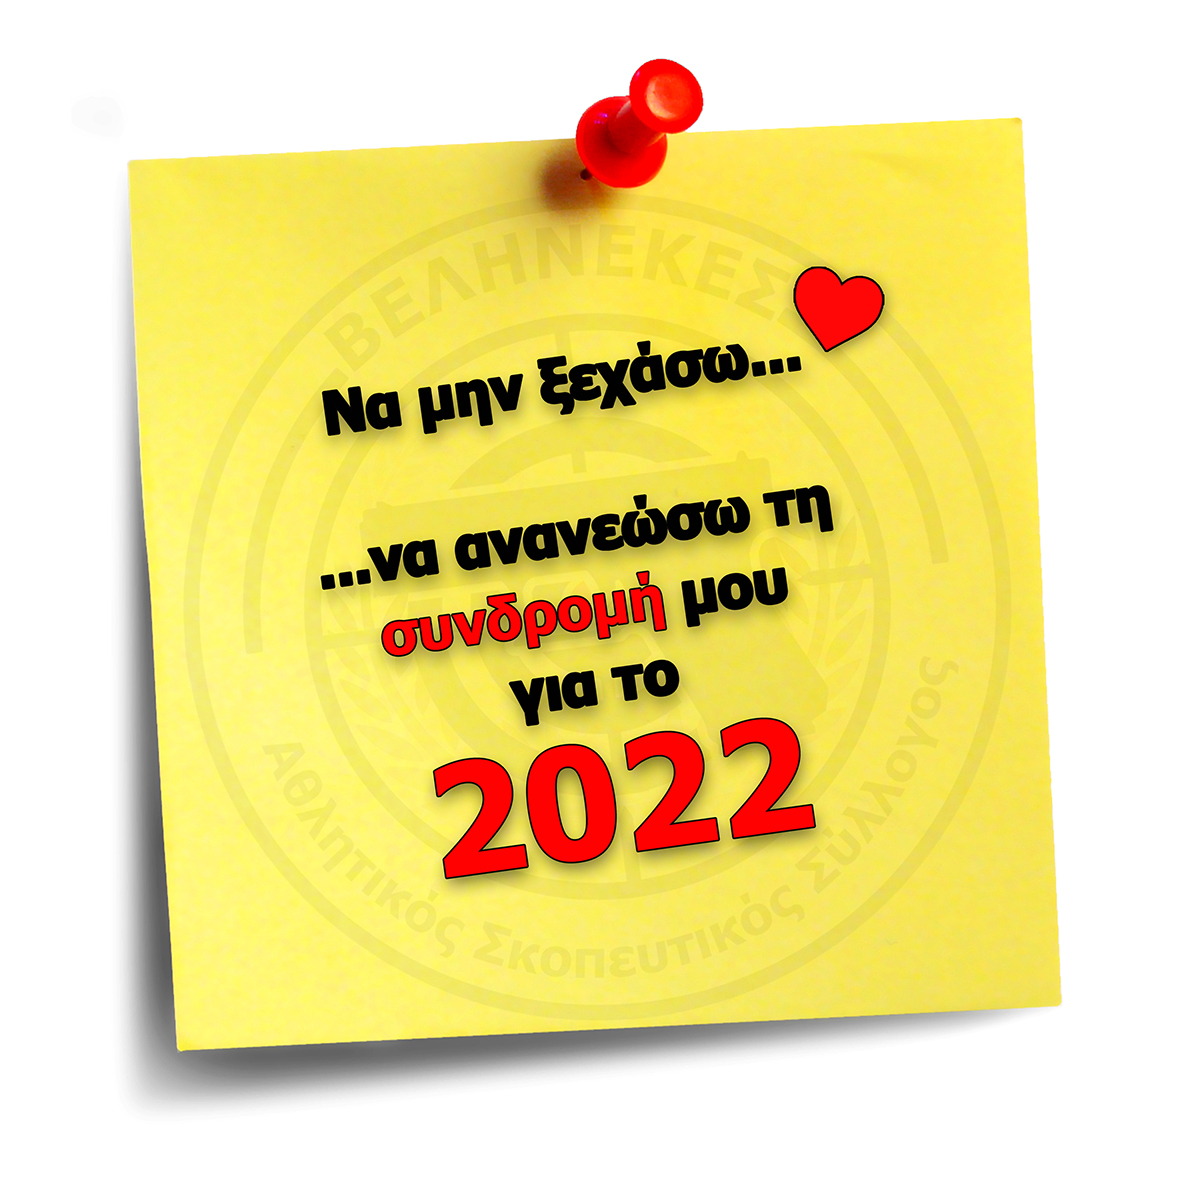 Ανανέωση συνδρομών για το 2022.